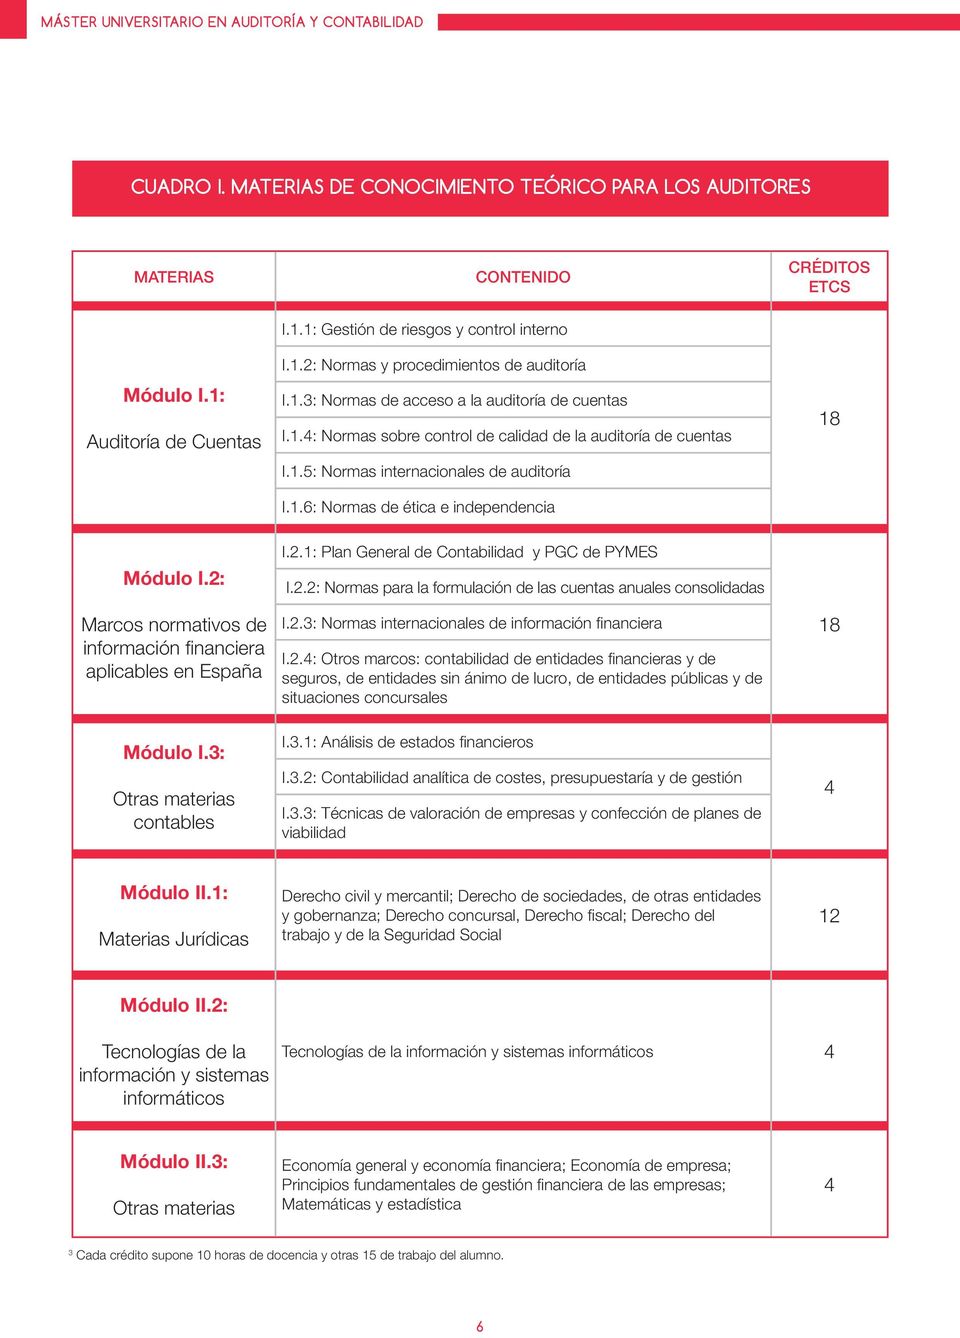 2: Marcos normativos de información financiera aplicables en España Módulo I.3: Otras materias contables I.2.1: Plan General de Contabilidad y PGC de PYMES I.2.2: Normas para la formulación de las cuentas anuales consolidadas I.